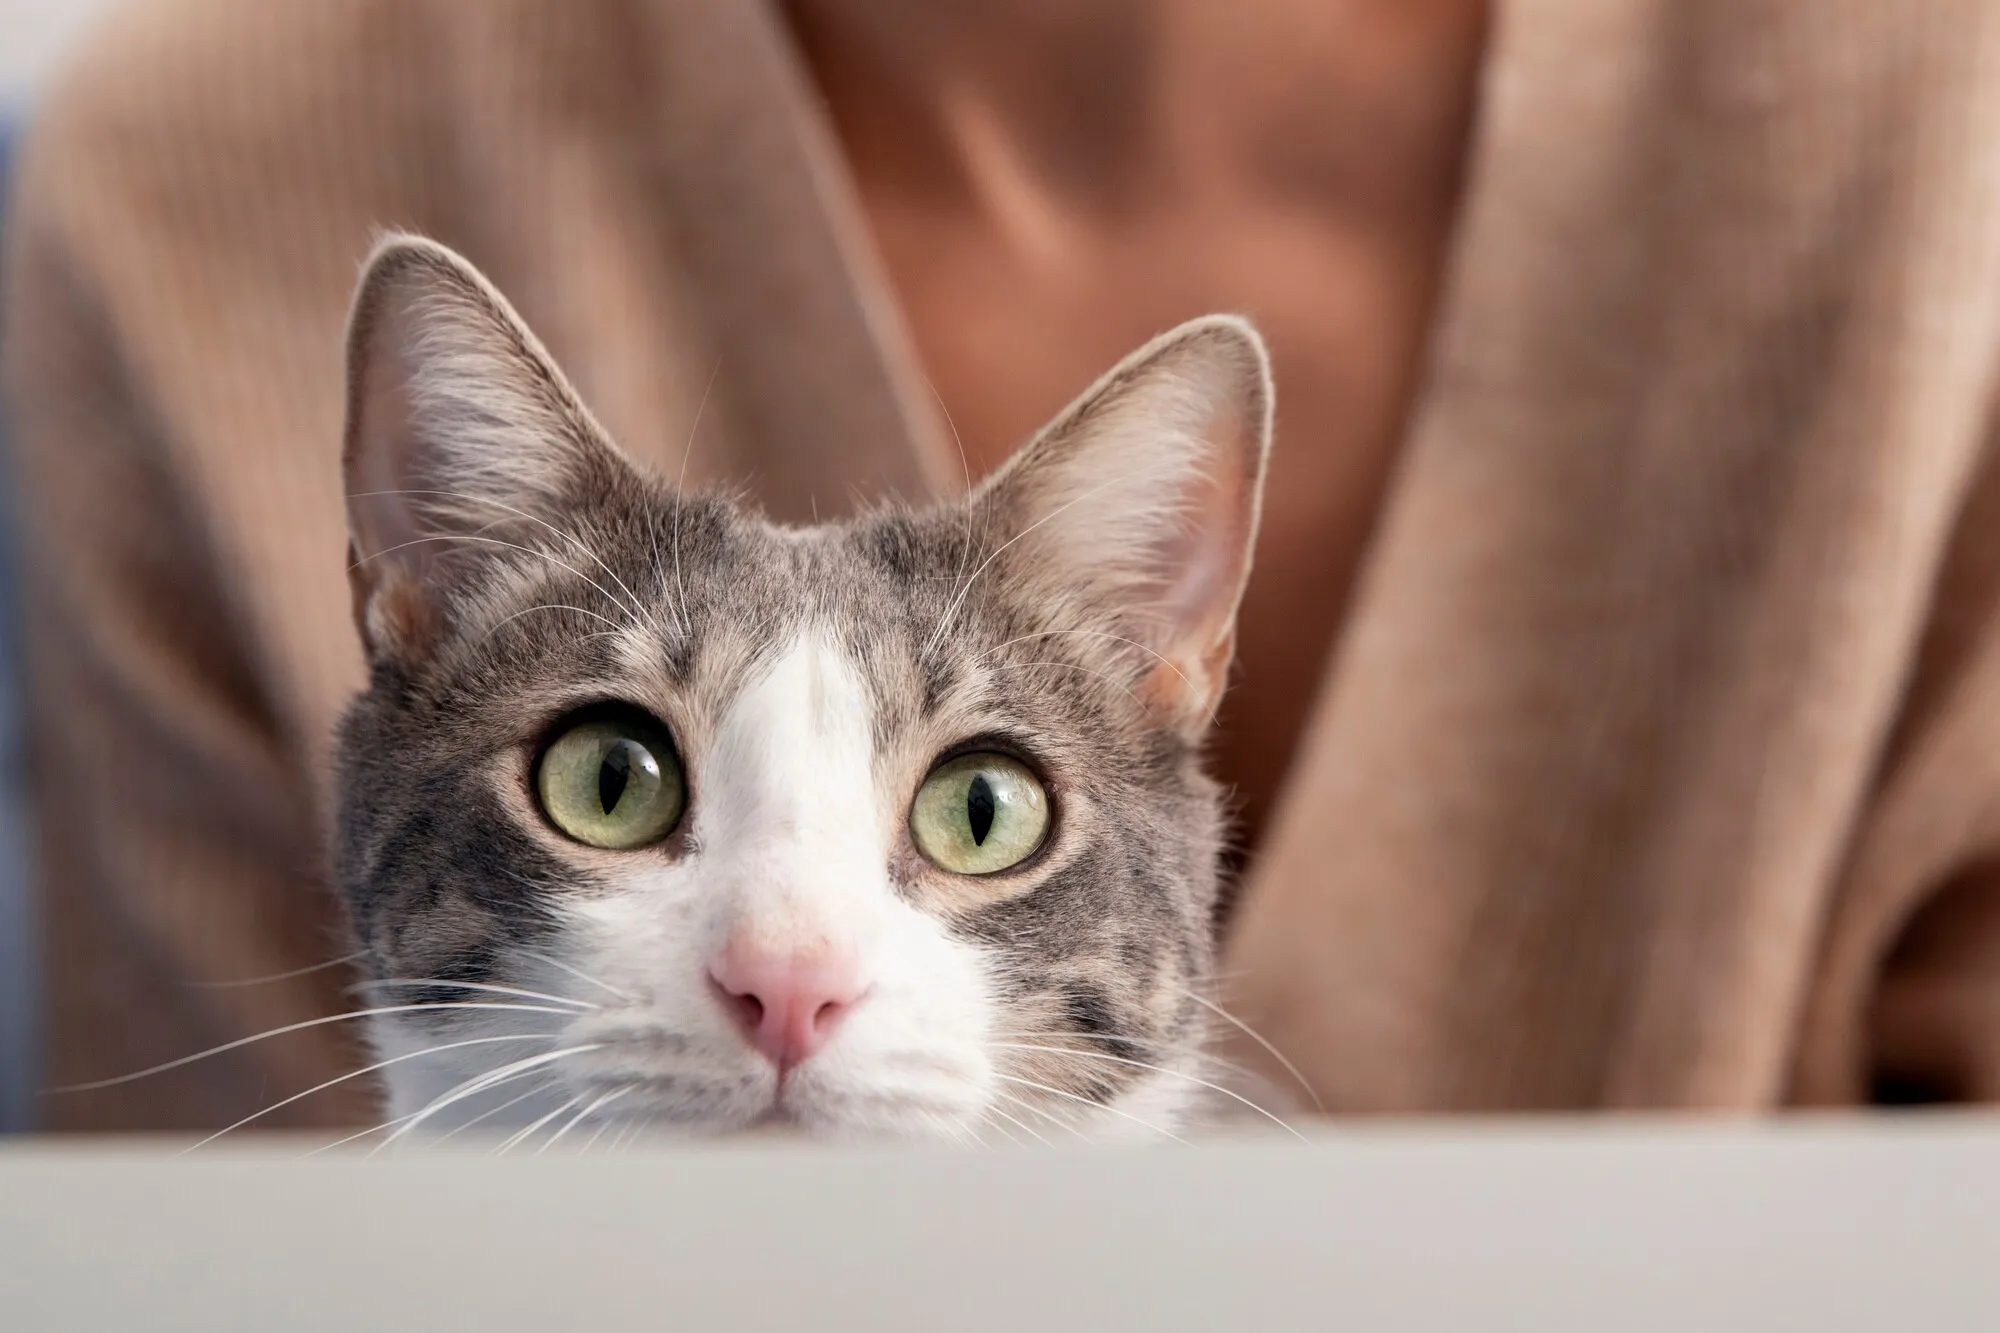 Tutkijat ovat ilmoittaneet kehittäneensä rokotteen, joka voi pidentää kissojen elämää jopa 30 vuodella...